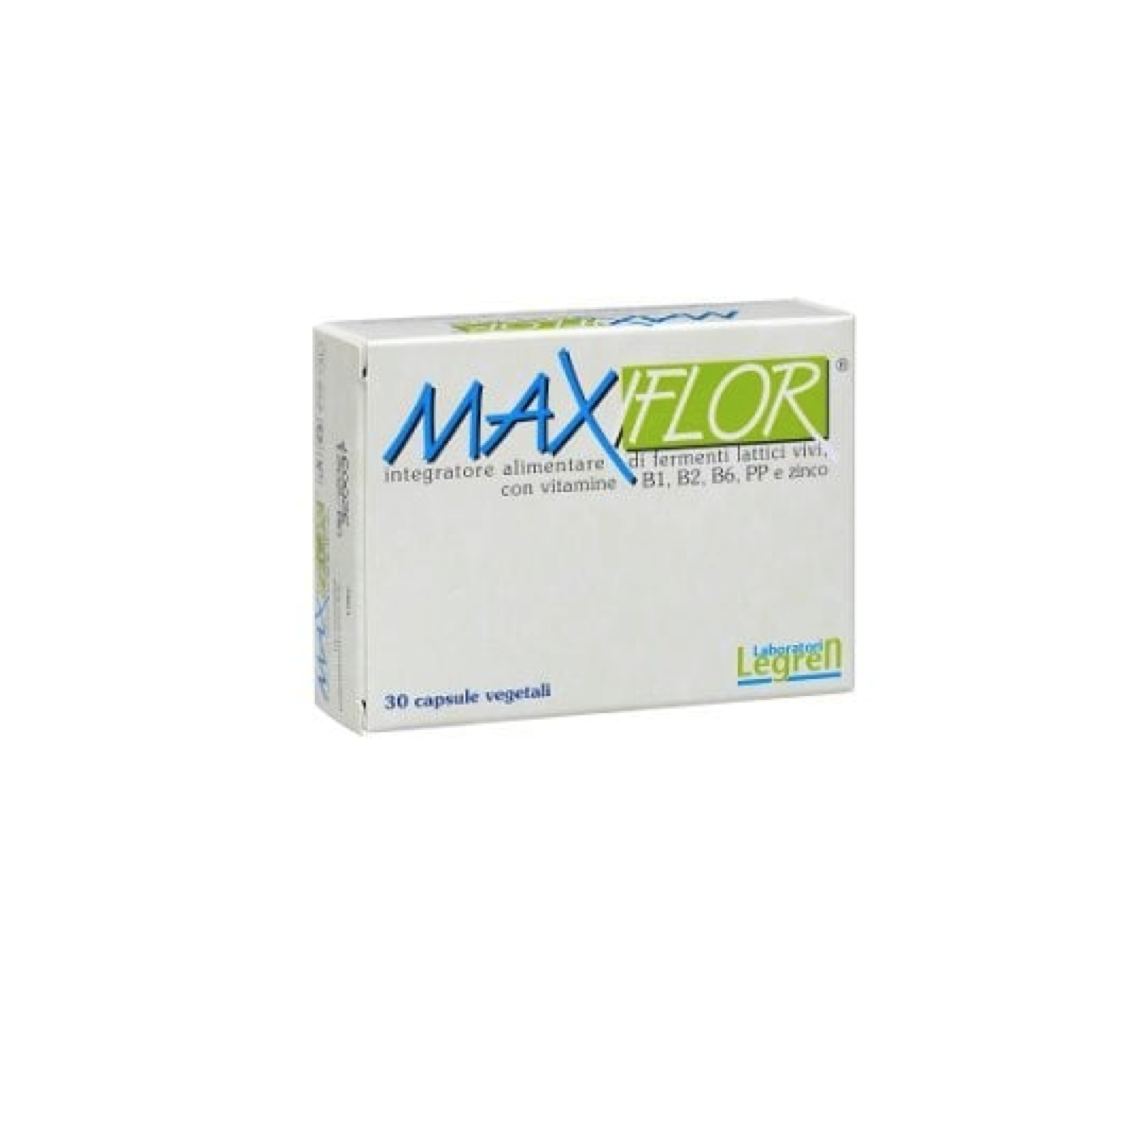 Maxiflor capsule integratore alimentare alto dosaggio di fermenti lattici vivi